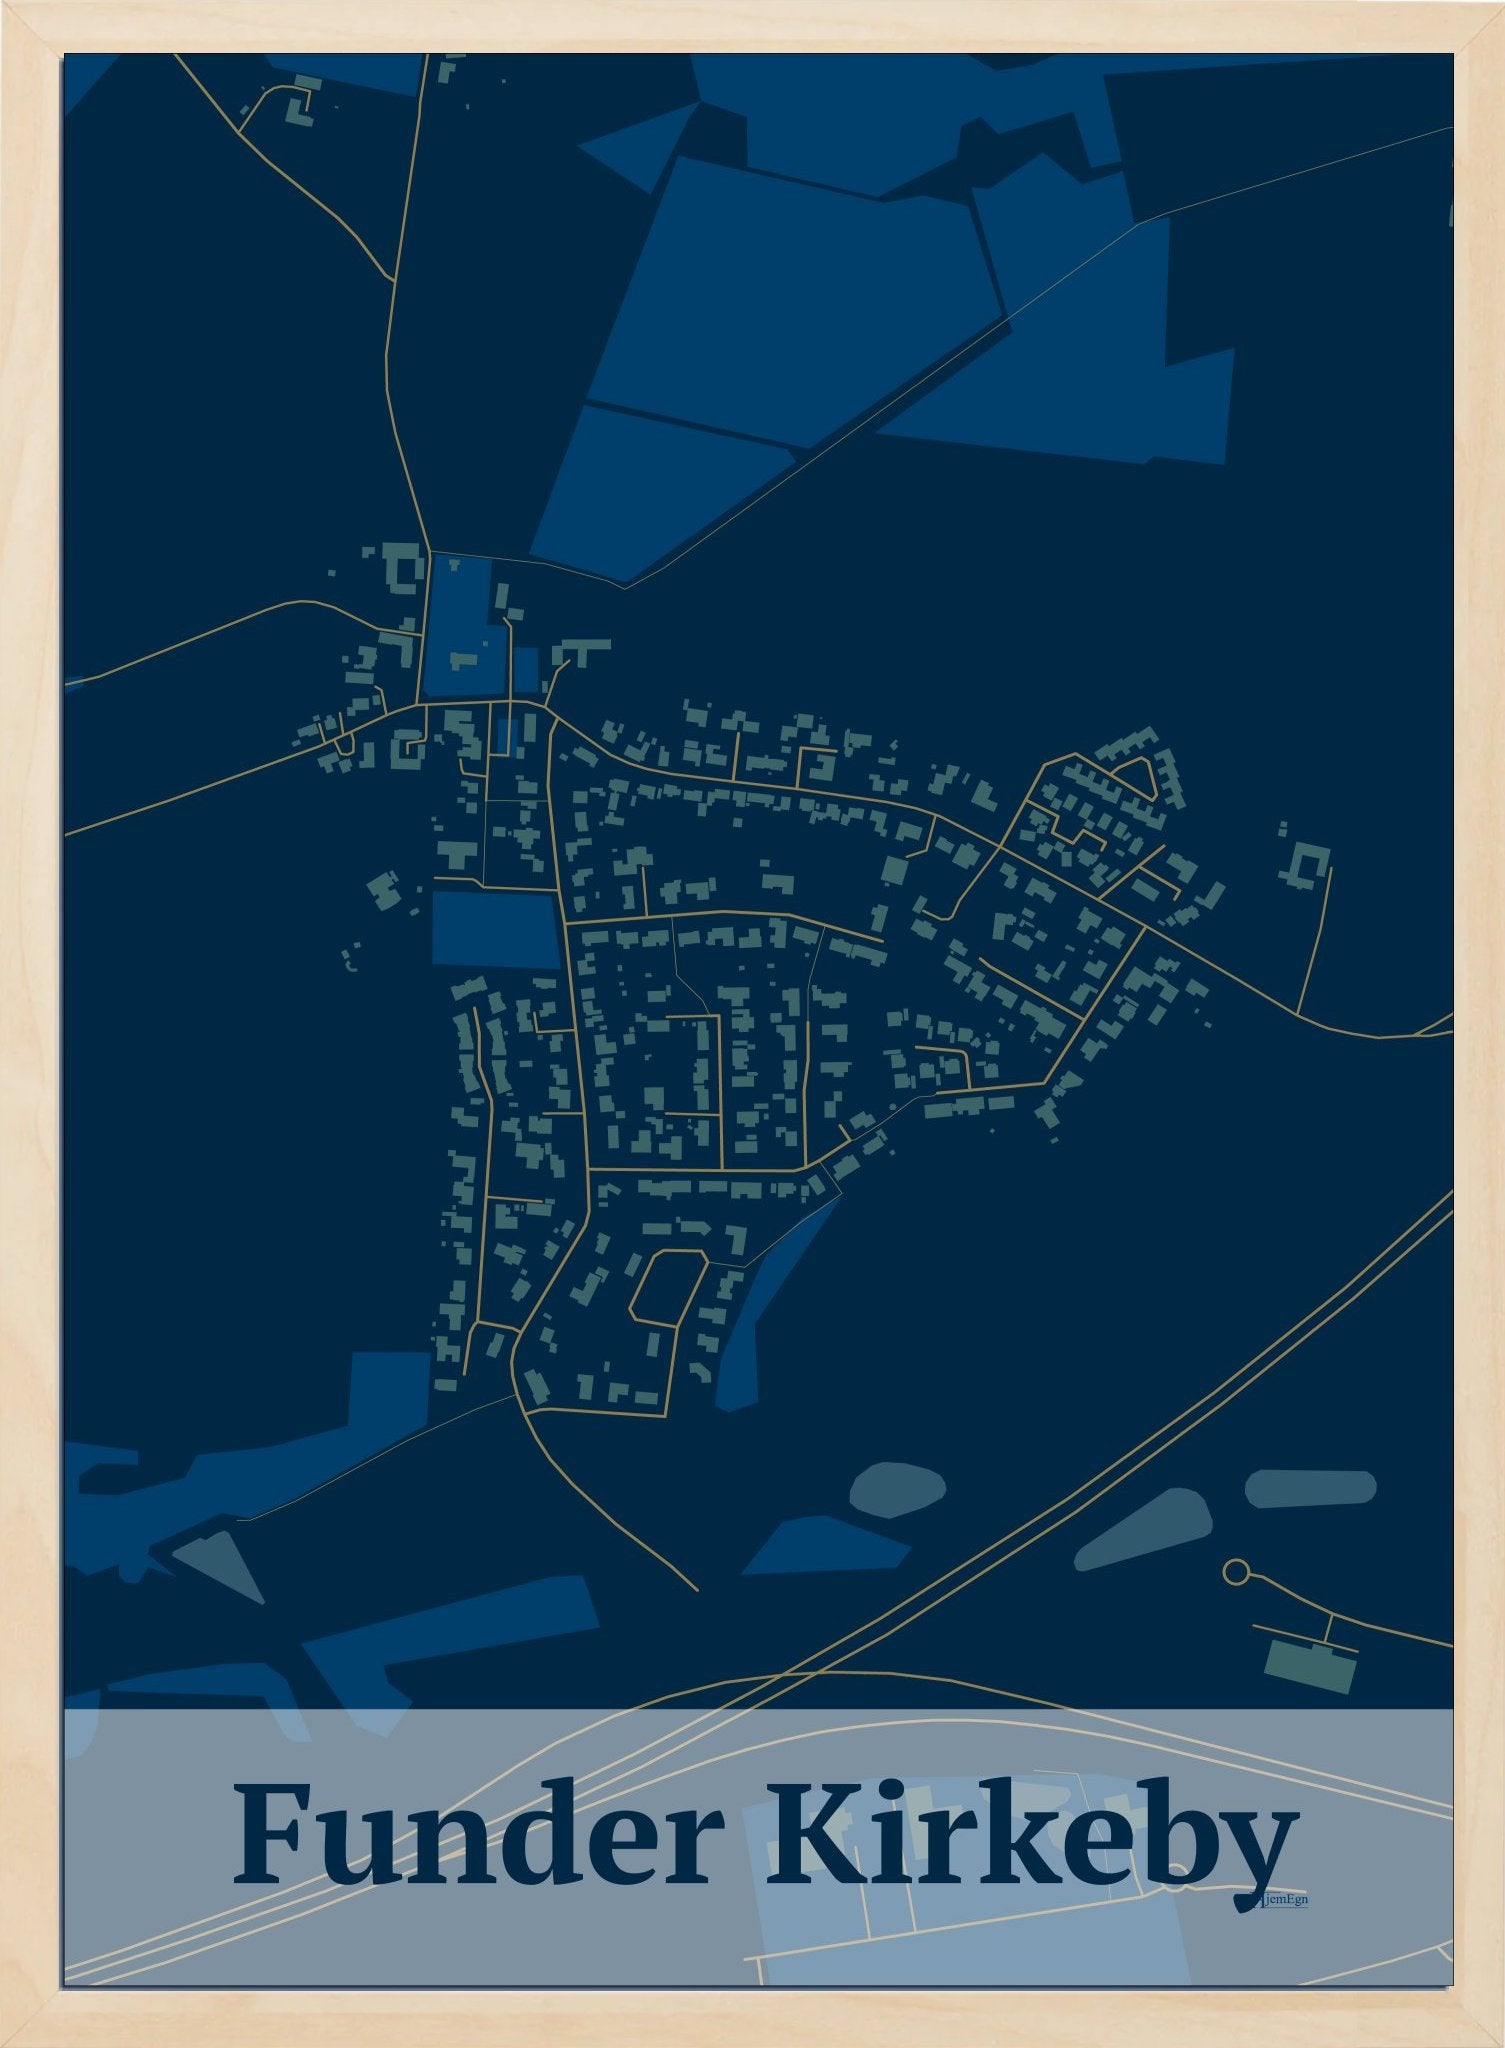 Funder Kirkeby plakat i farve mørk blå og HjemEgn.dk design firkantet. Design bykort for Funder Kirkeby